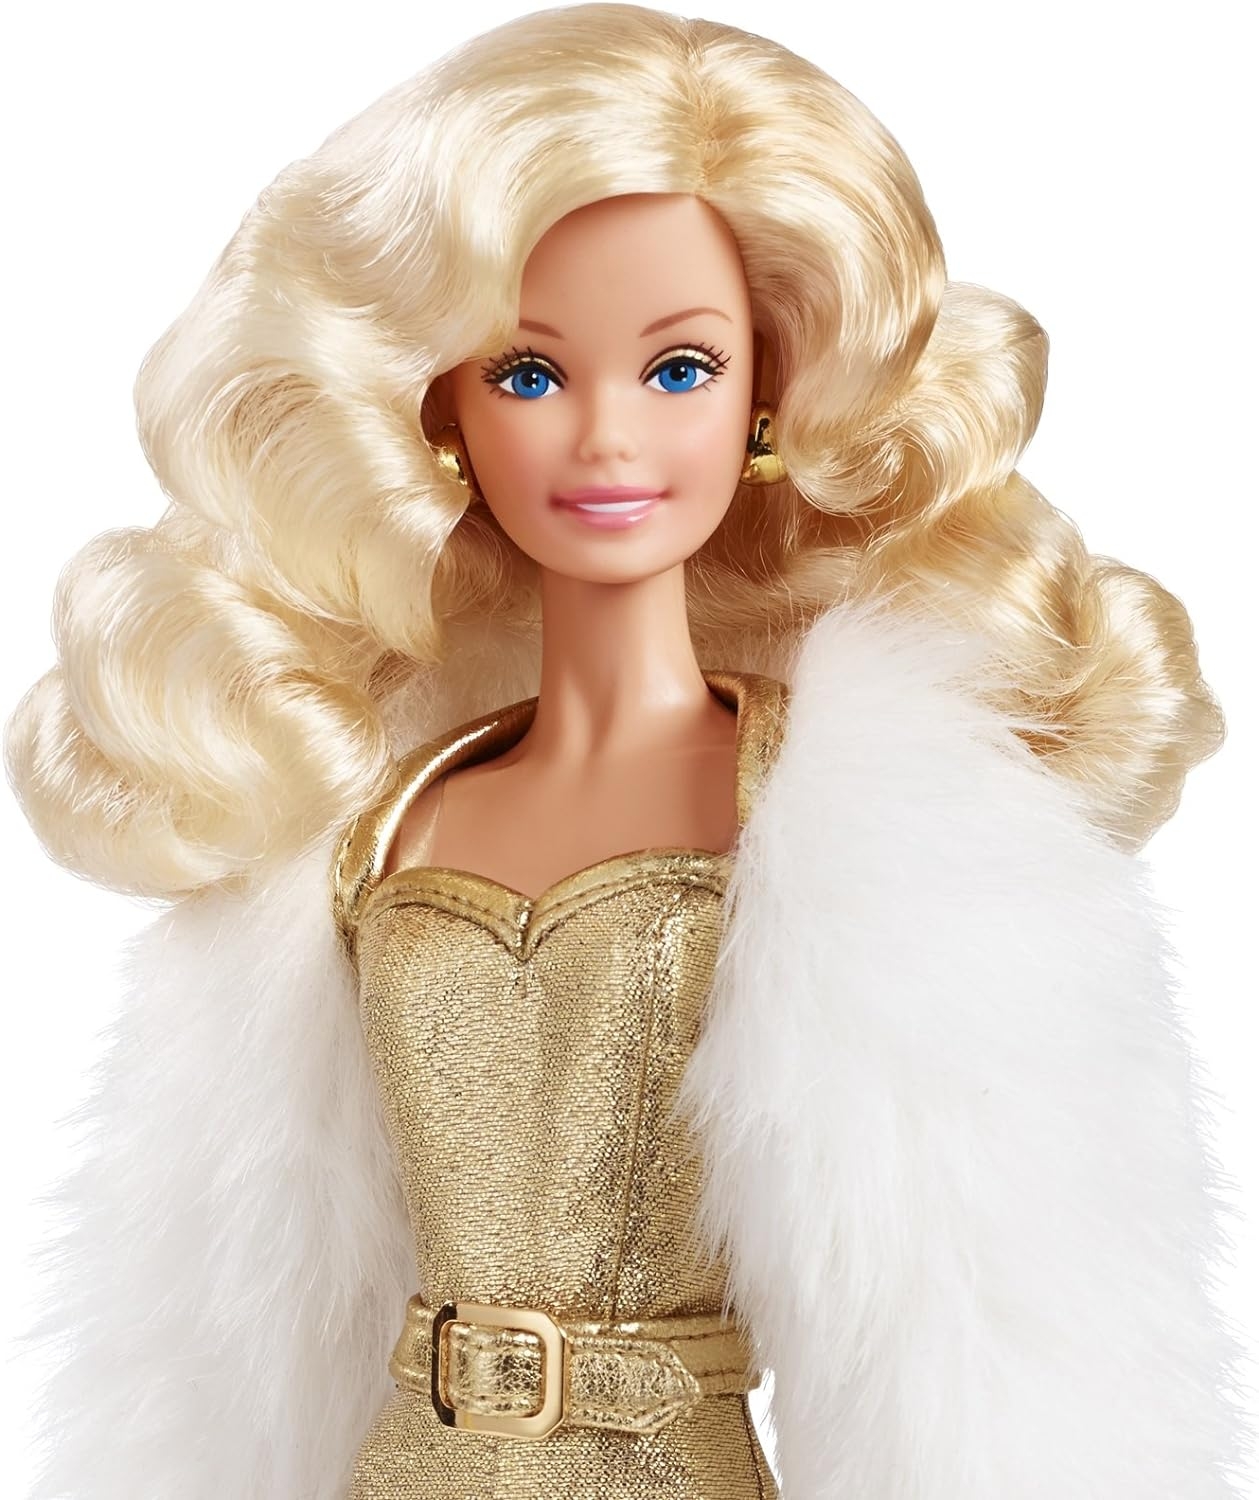 Barbie%20Golden%20Dream%20Superstar%20Metalik%20Altın%20Koleksiyon%20Bebeği%20DGX88